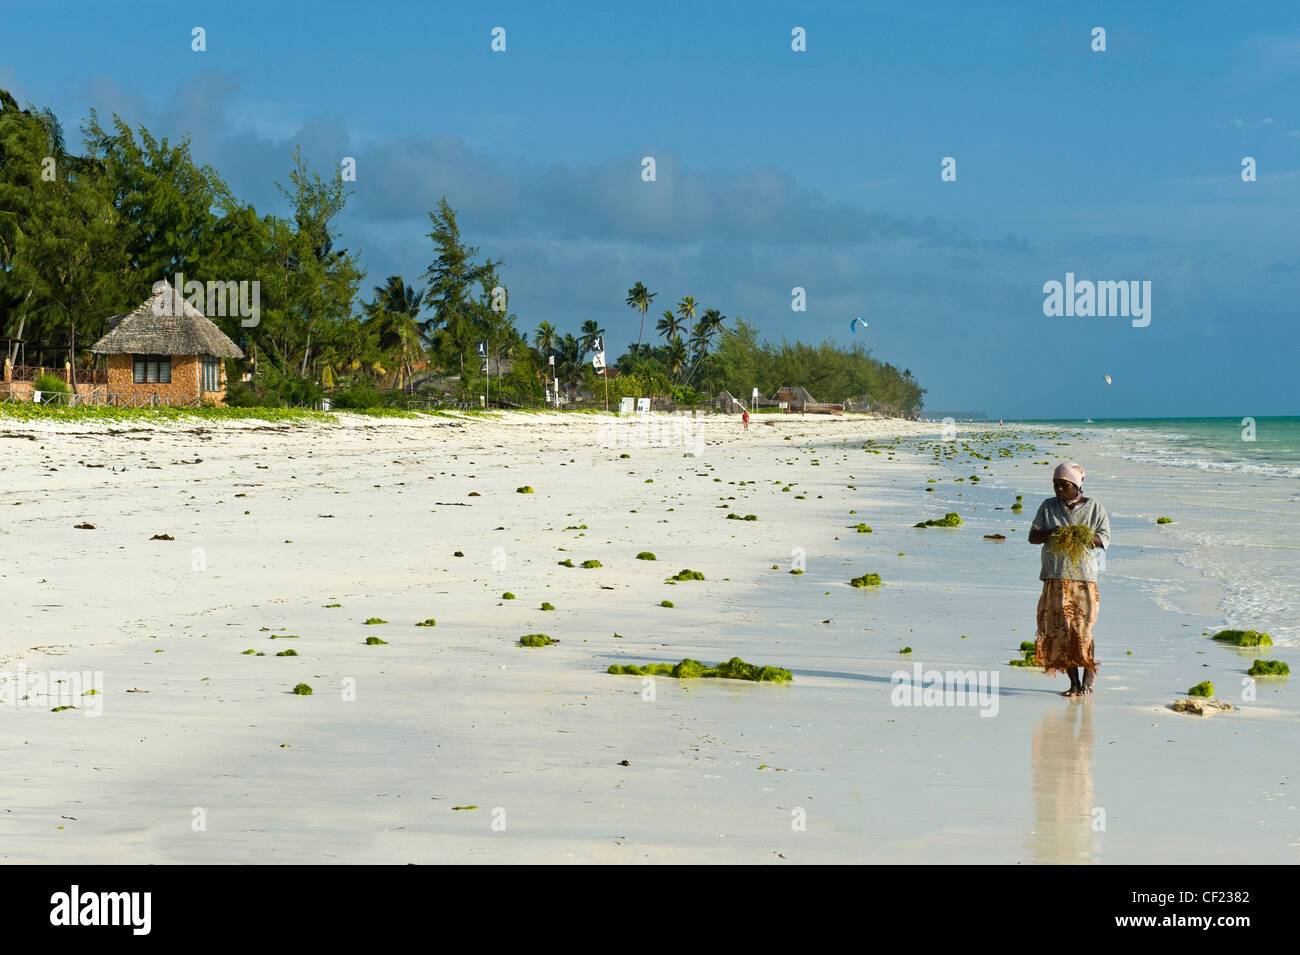 Woman collecting seaweed on the beach of Paje, Zanzibar, Tanzania Stock Photo